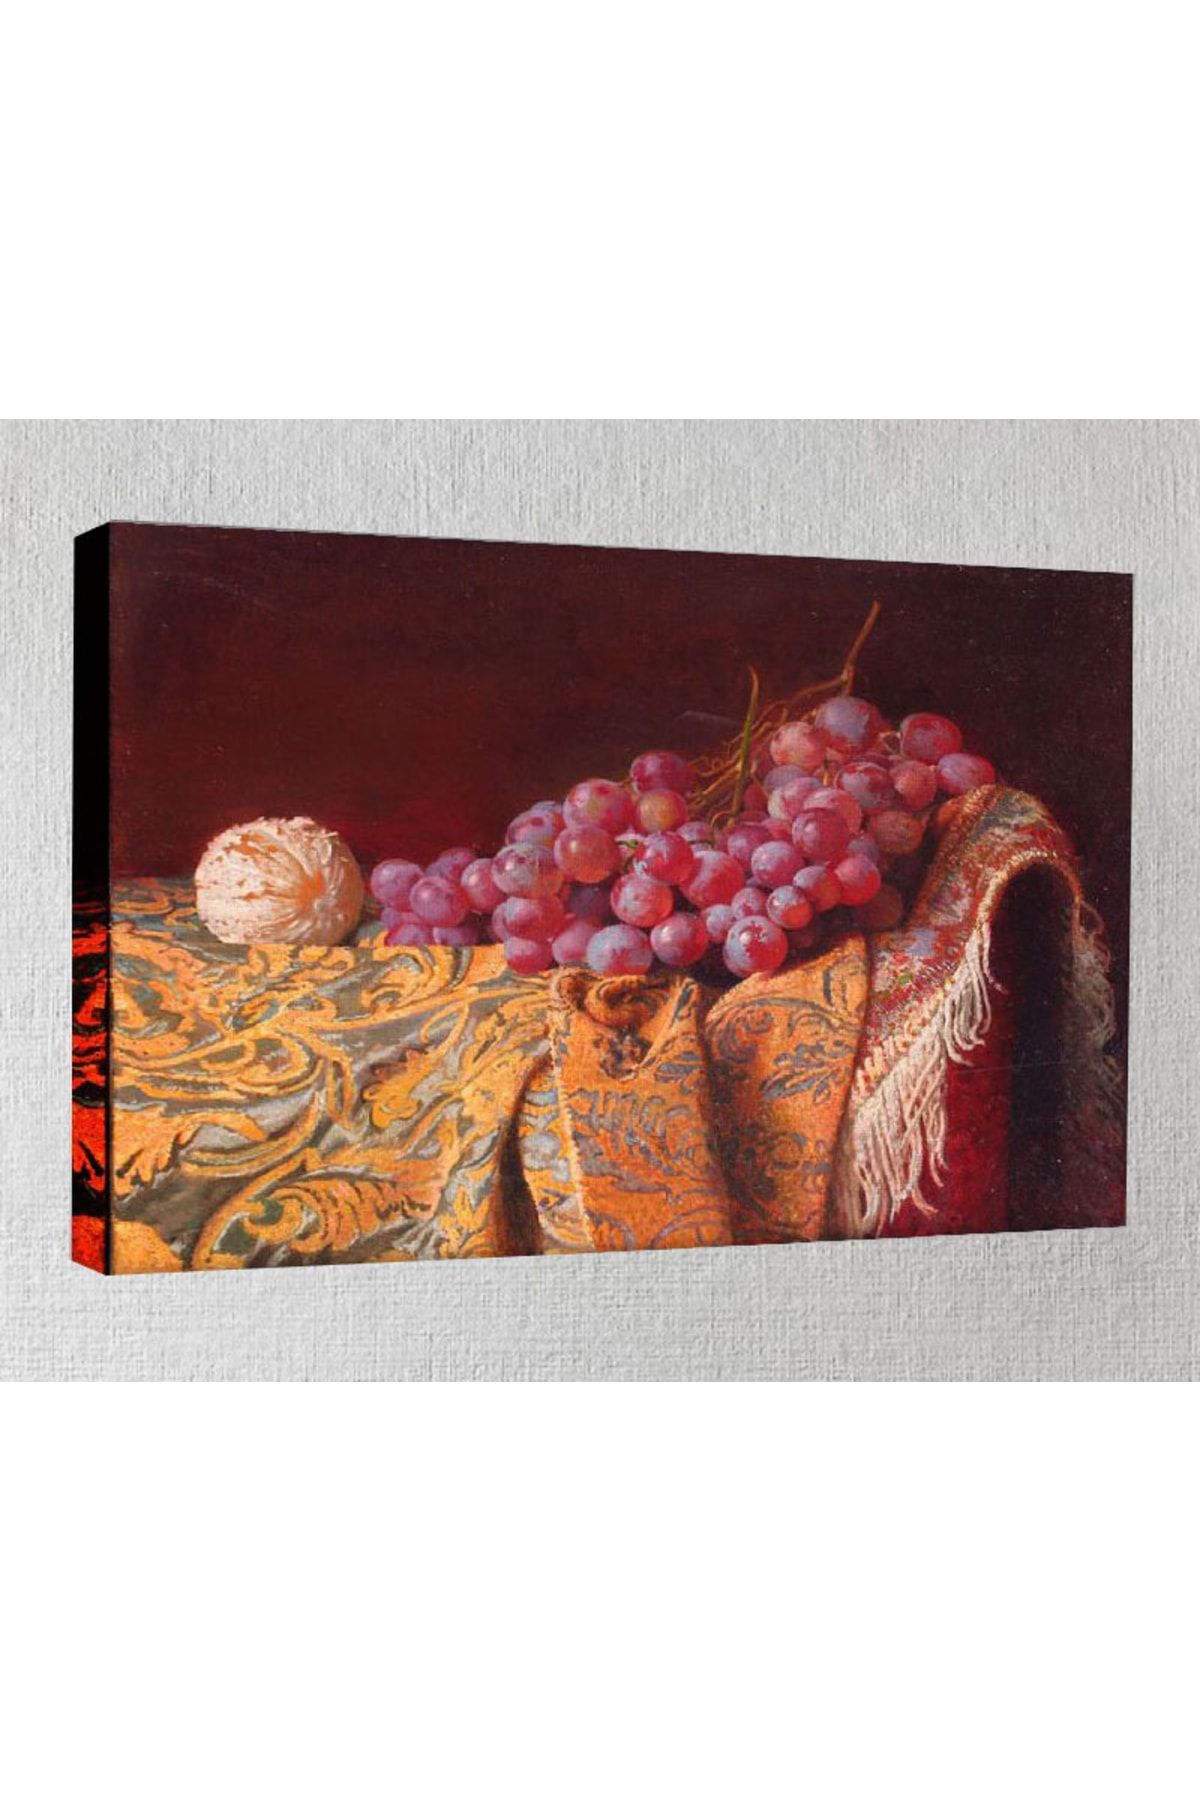 Genel Markalar Kanvas Tablo - 30x40 cm - Meyve Resimleri - My19